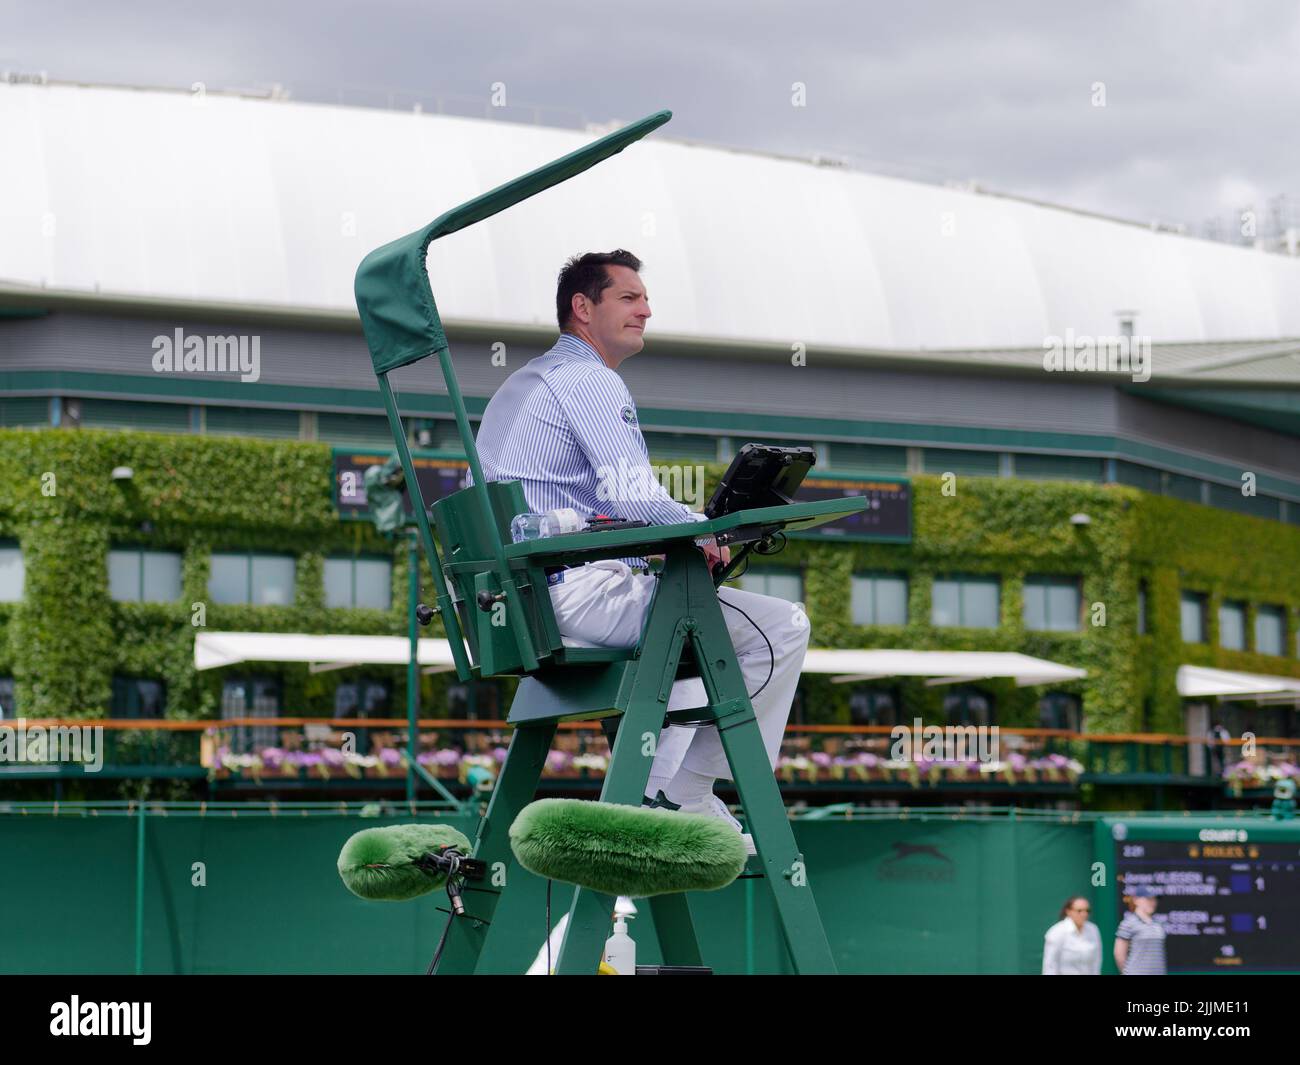 Wimbledon, Gran Londres, Inglaterra, Julio 02 2022: Campeonato de Tenis de Wimbledon. Primer plano de un árbitro durante un partido. Foto de stock